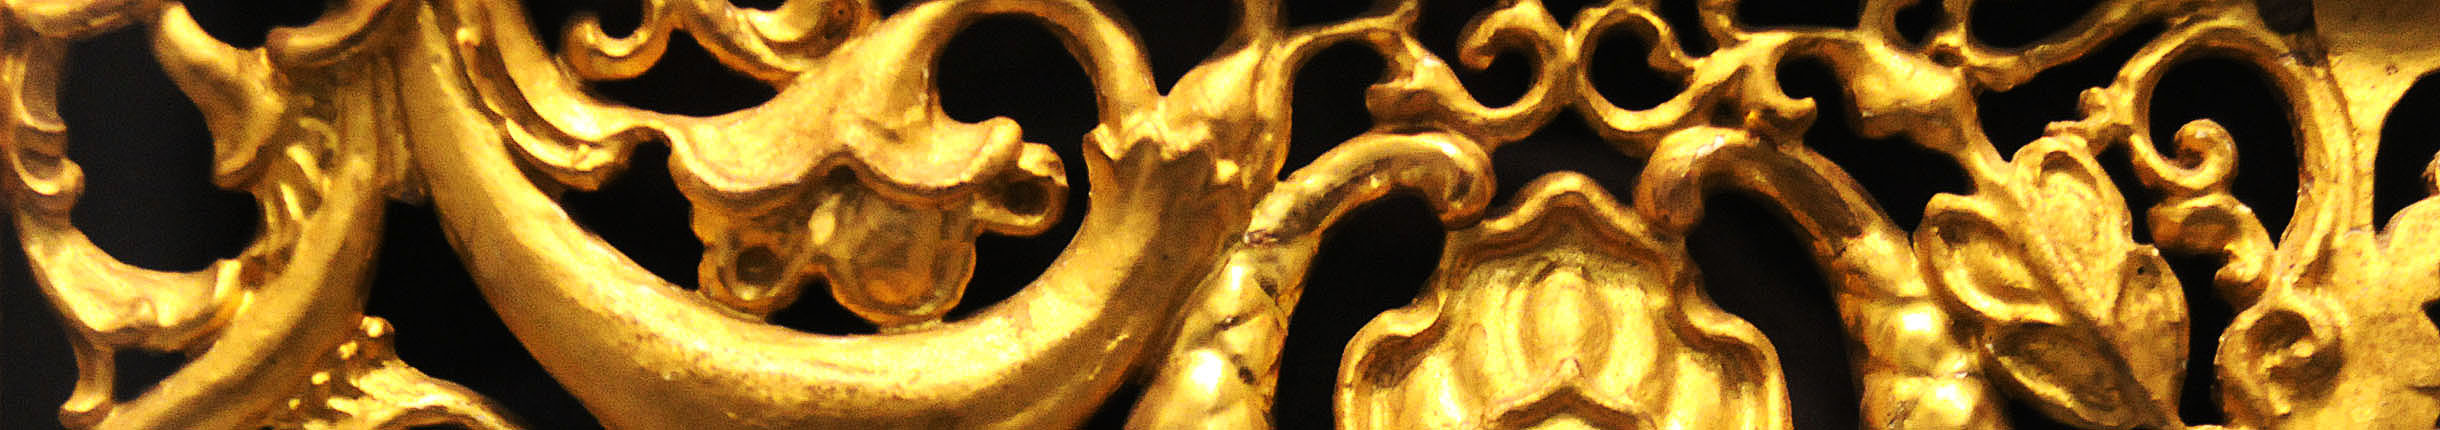 Goldenes Ornament